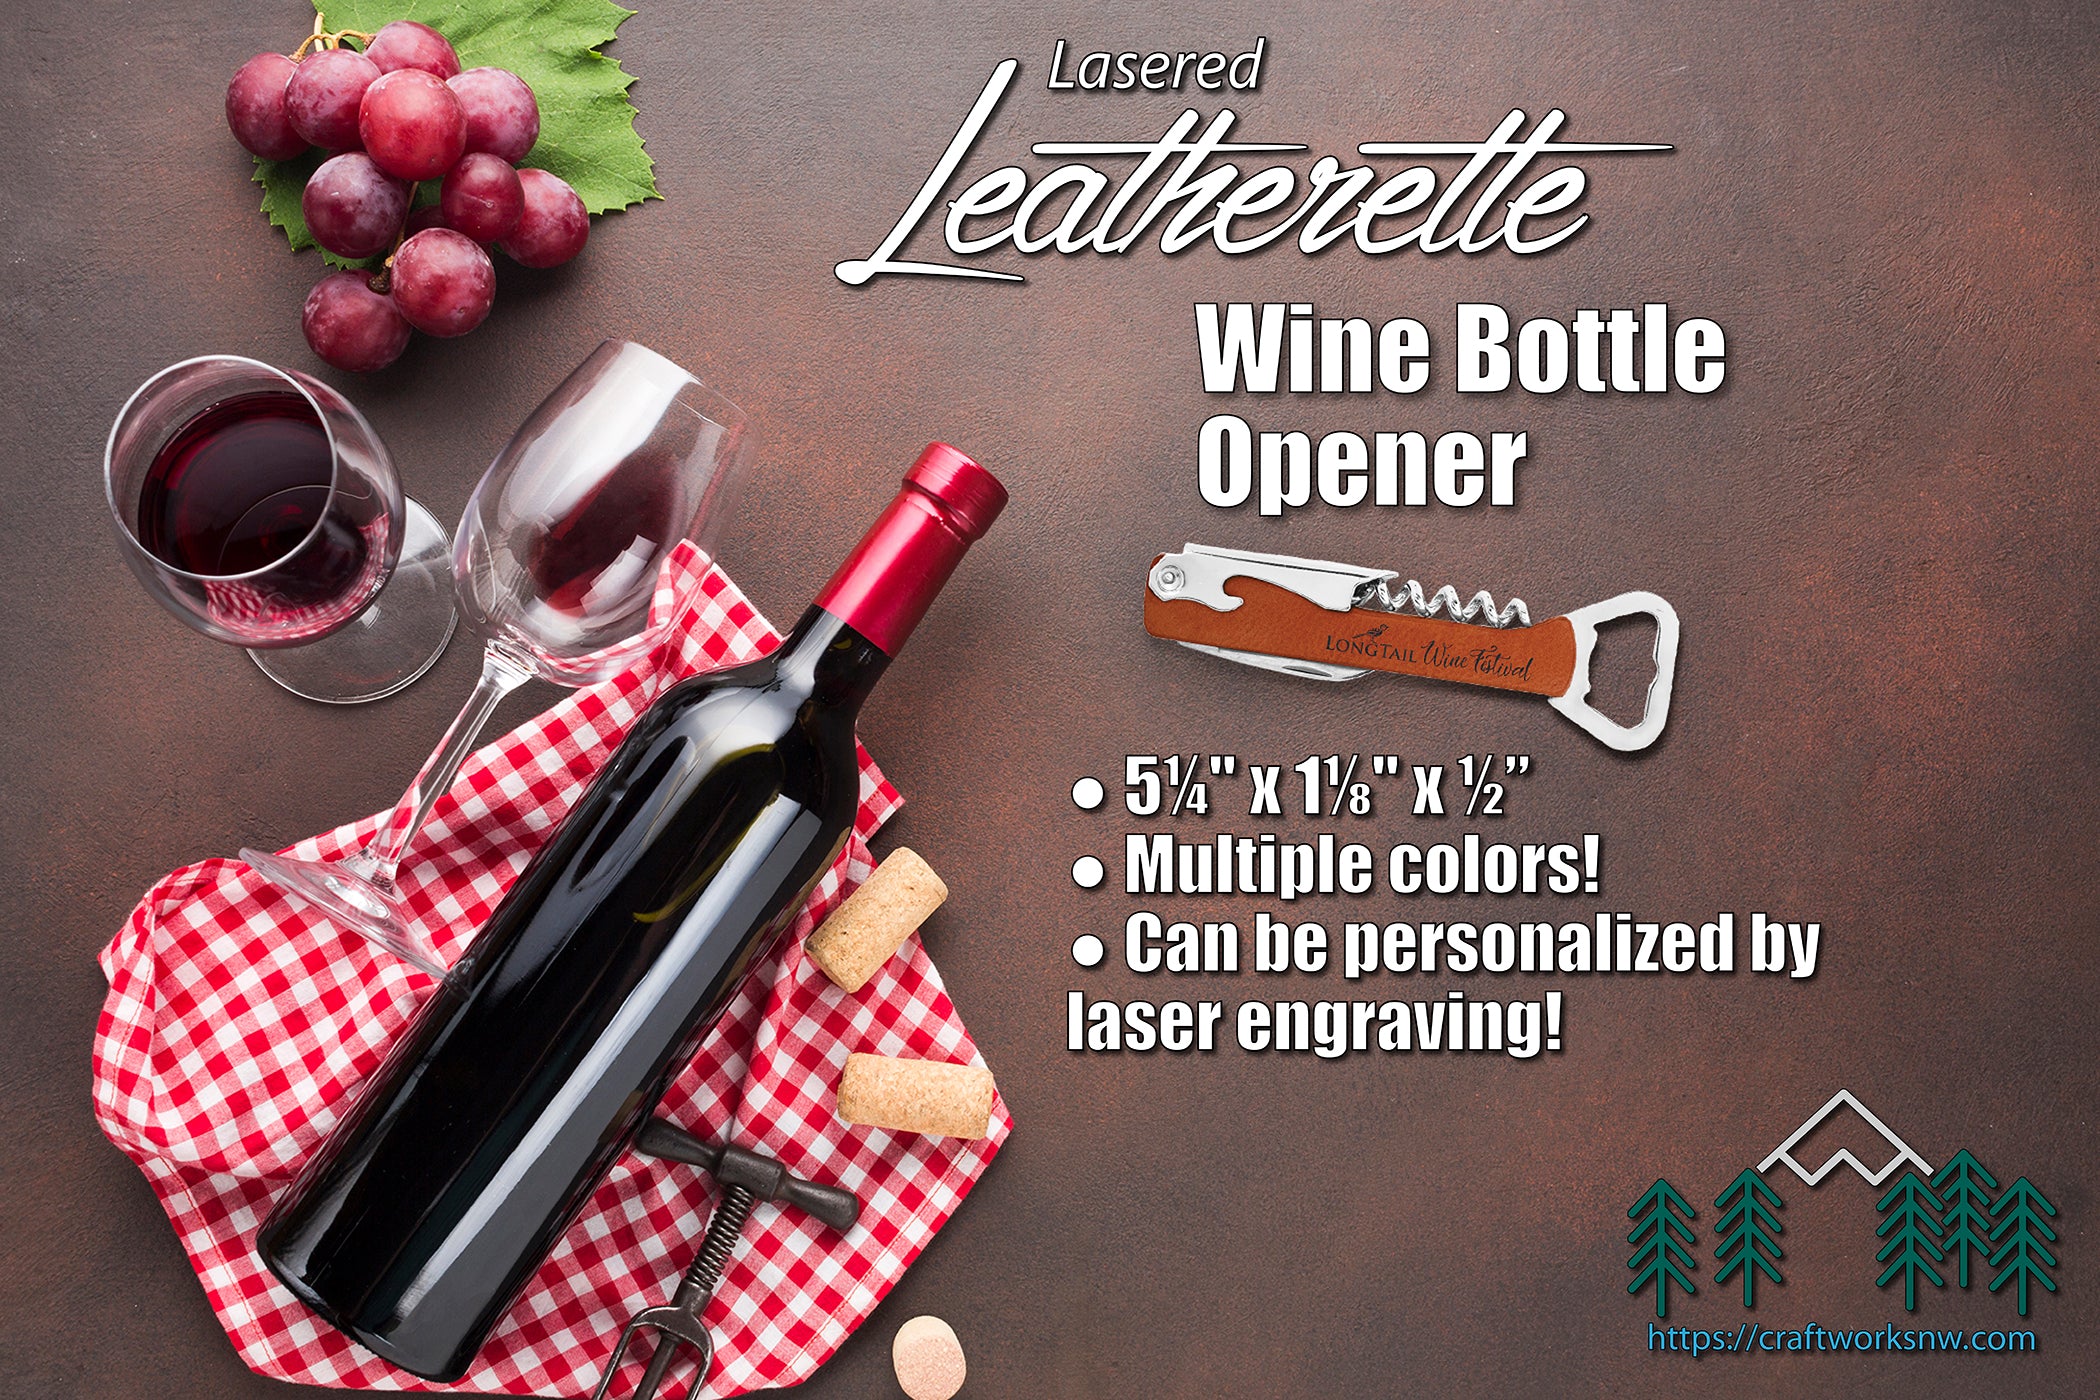 Wine Bottle Opener, Laserable Leatherette, Laser Engraved - Craftworks NW, LLC